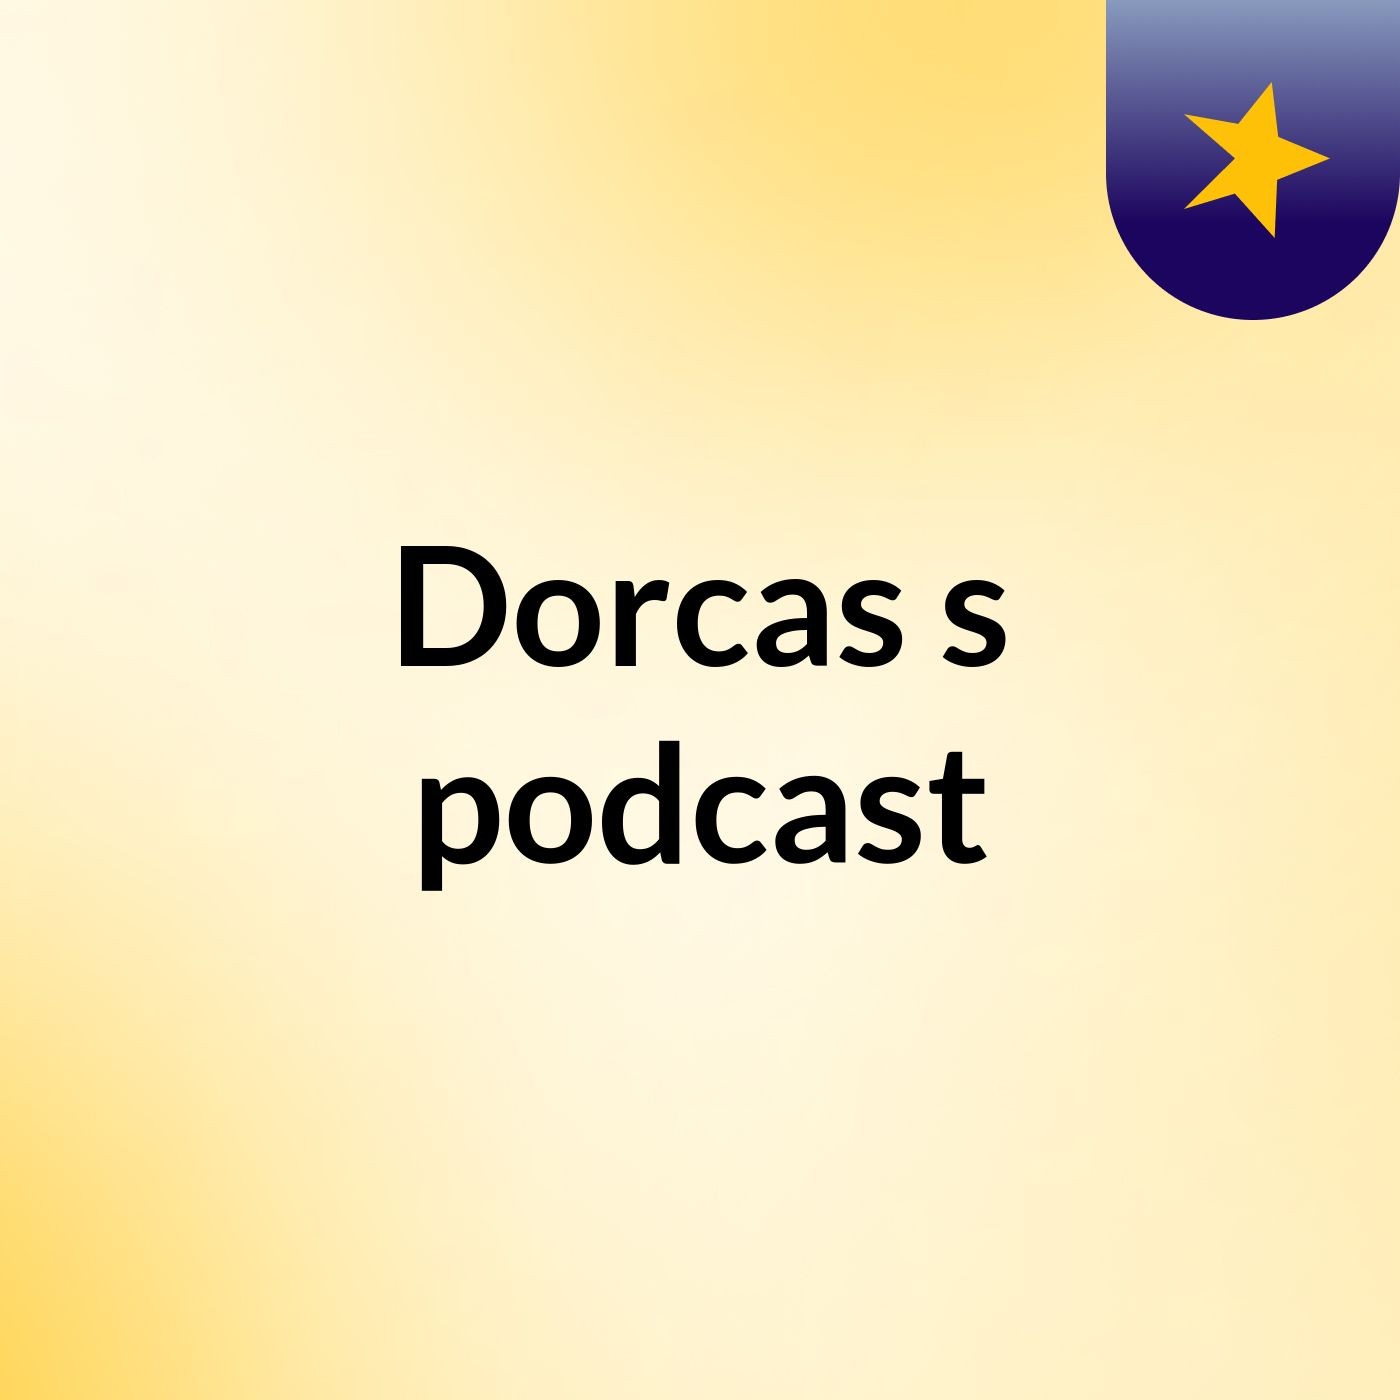 Episode 3 - Dorcas's podcast